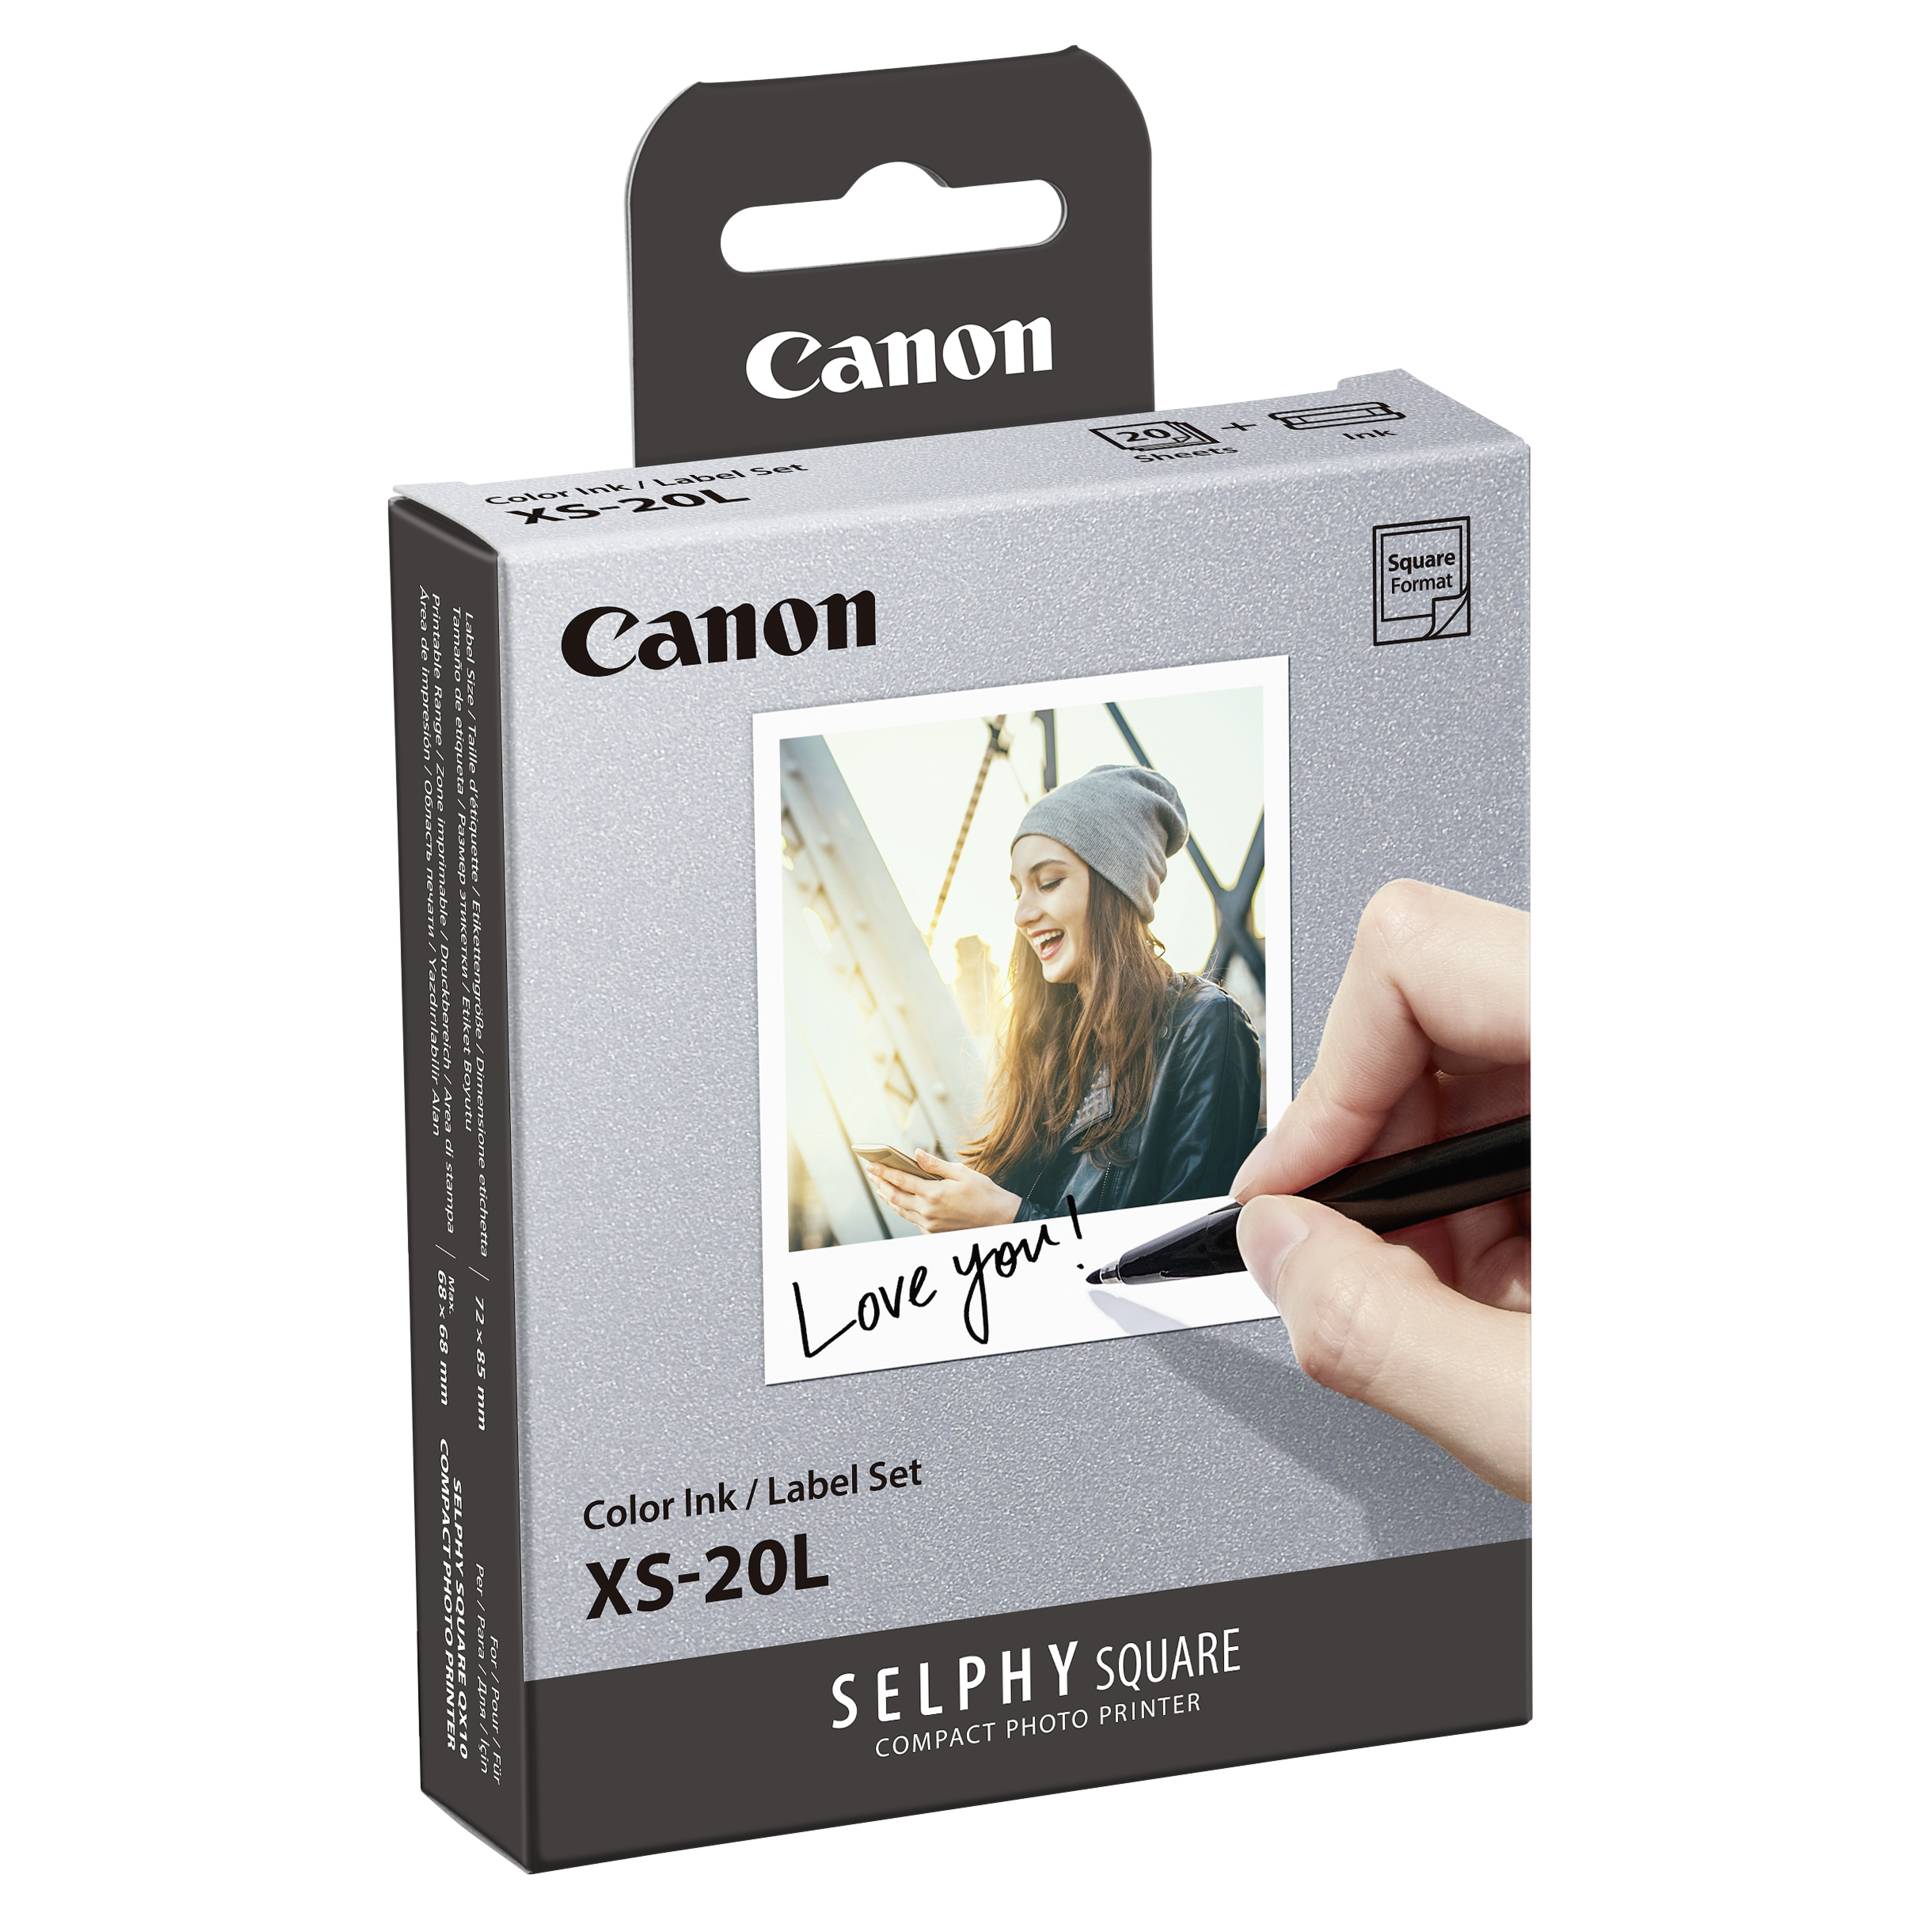 Canon XS-20L 72x85mm Photo Paper, 20 Blatt 